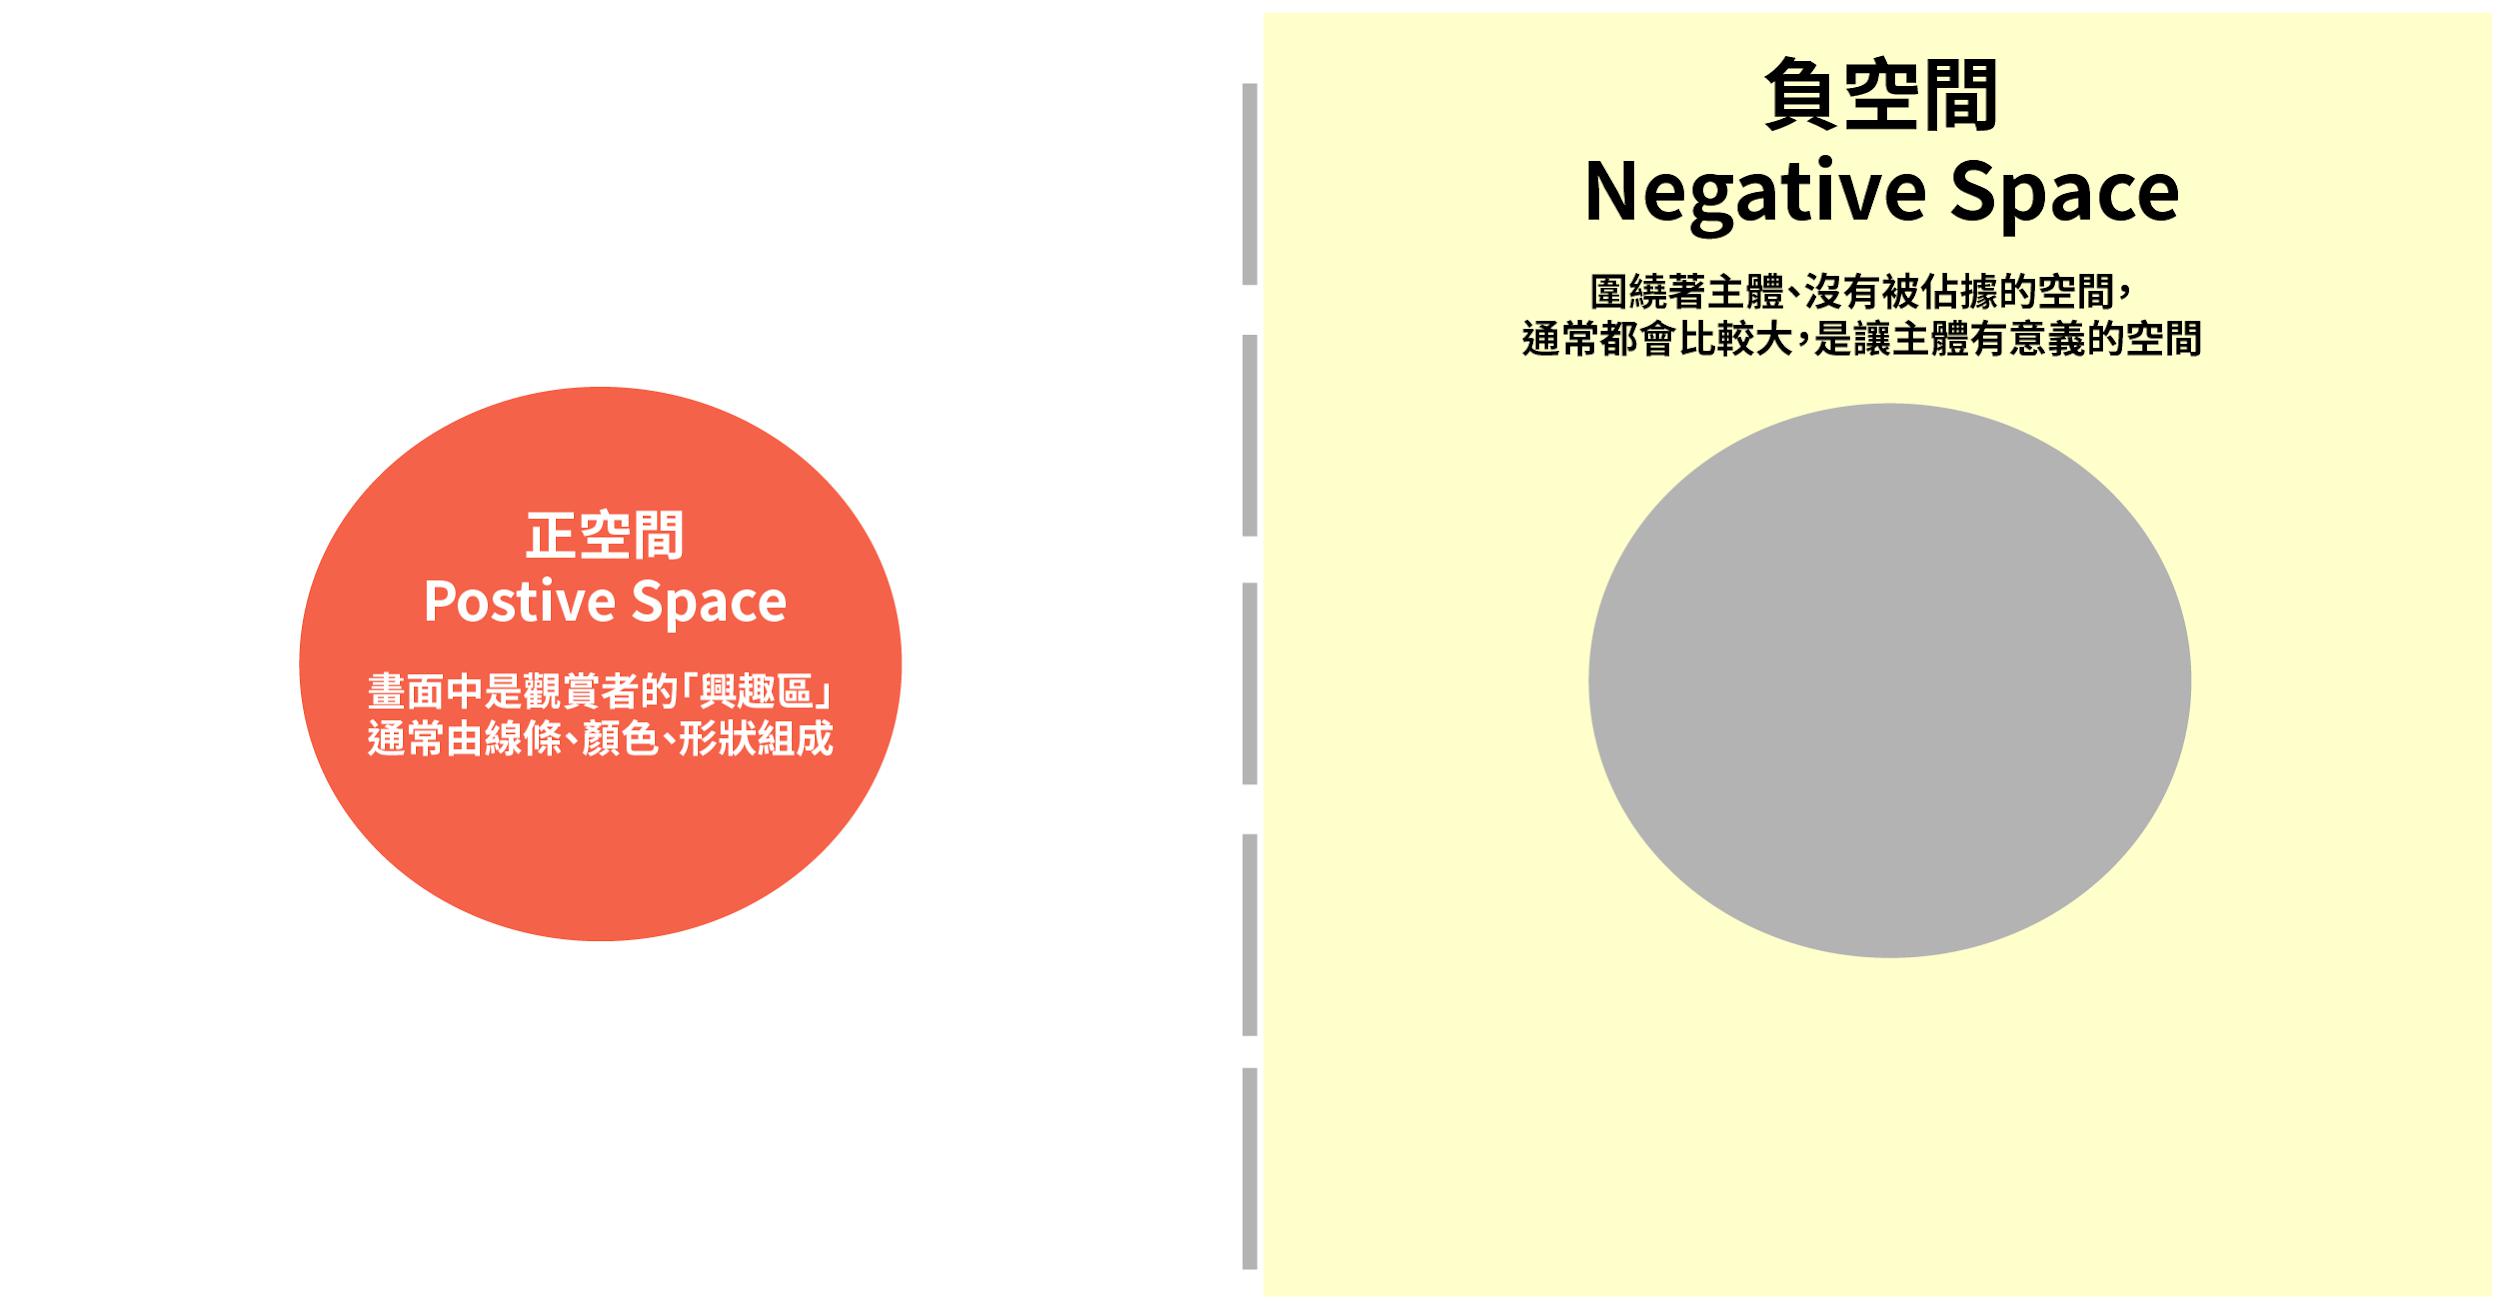 正空間 Positive Space vs 負空間 Negative Space